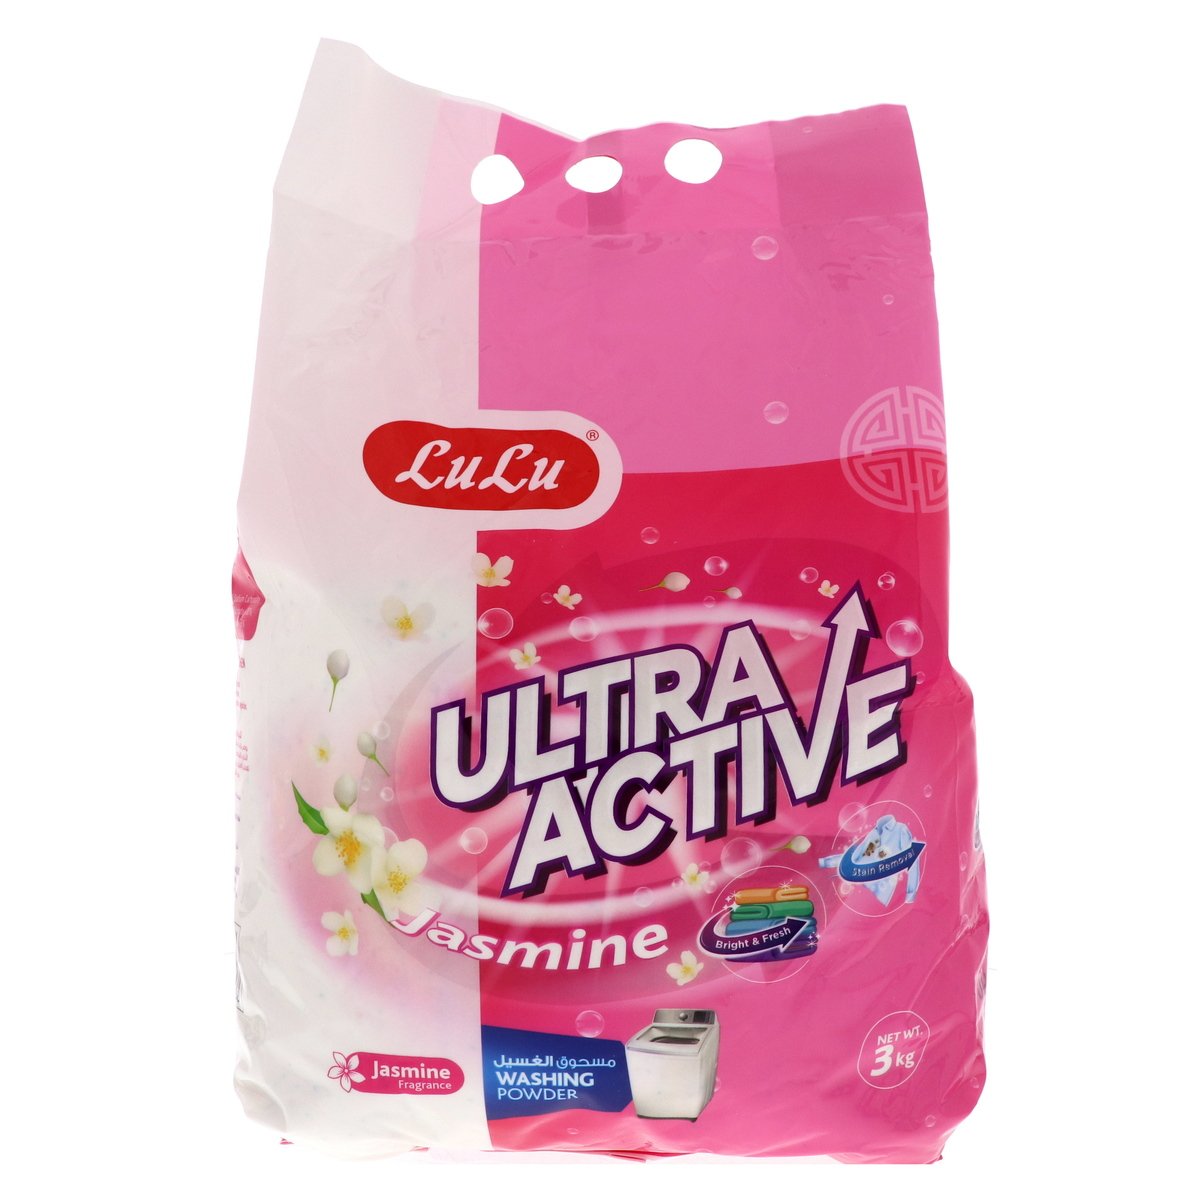 LuLu Ultra Active Washing Powder Jasmine 3kg